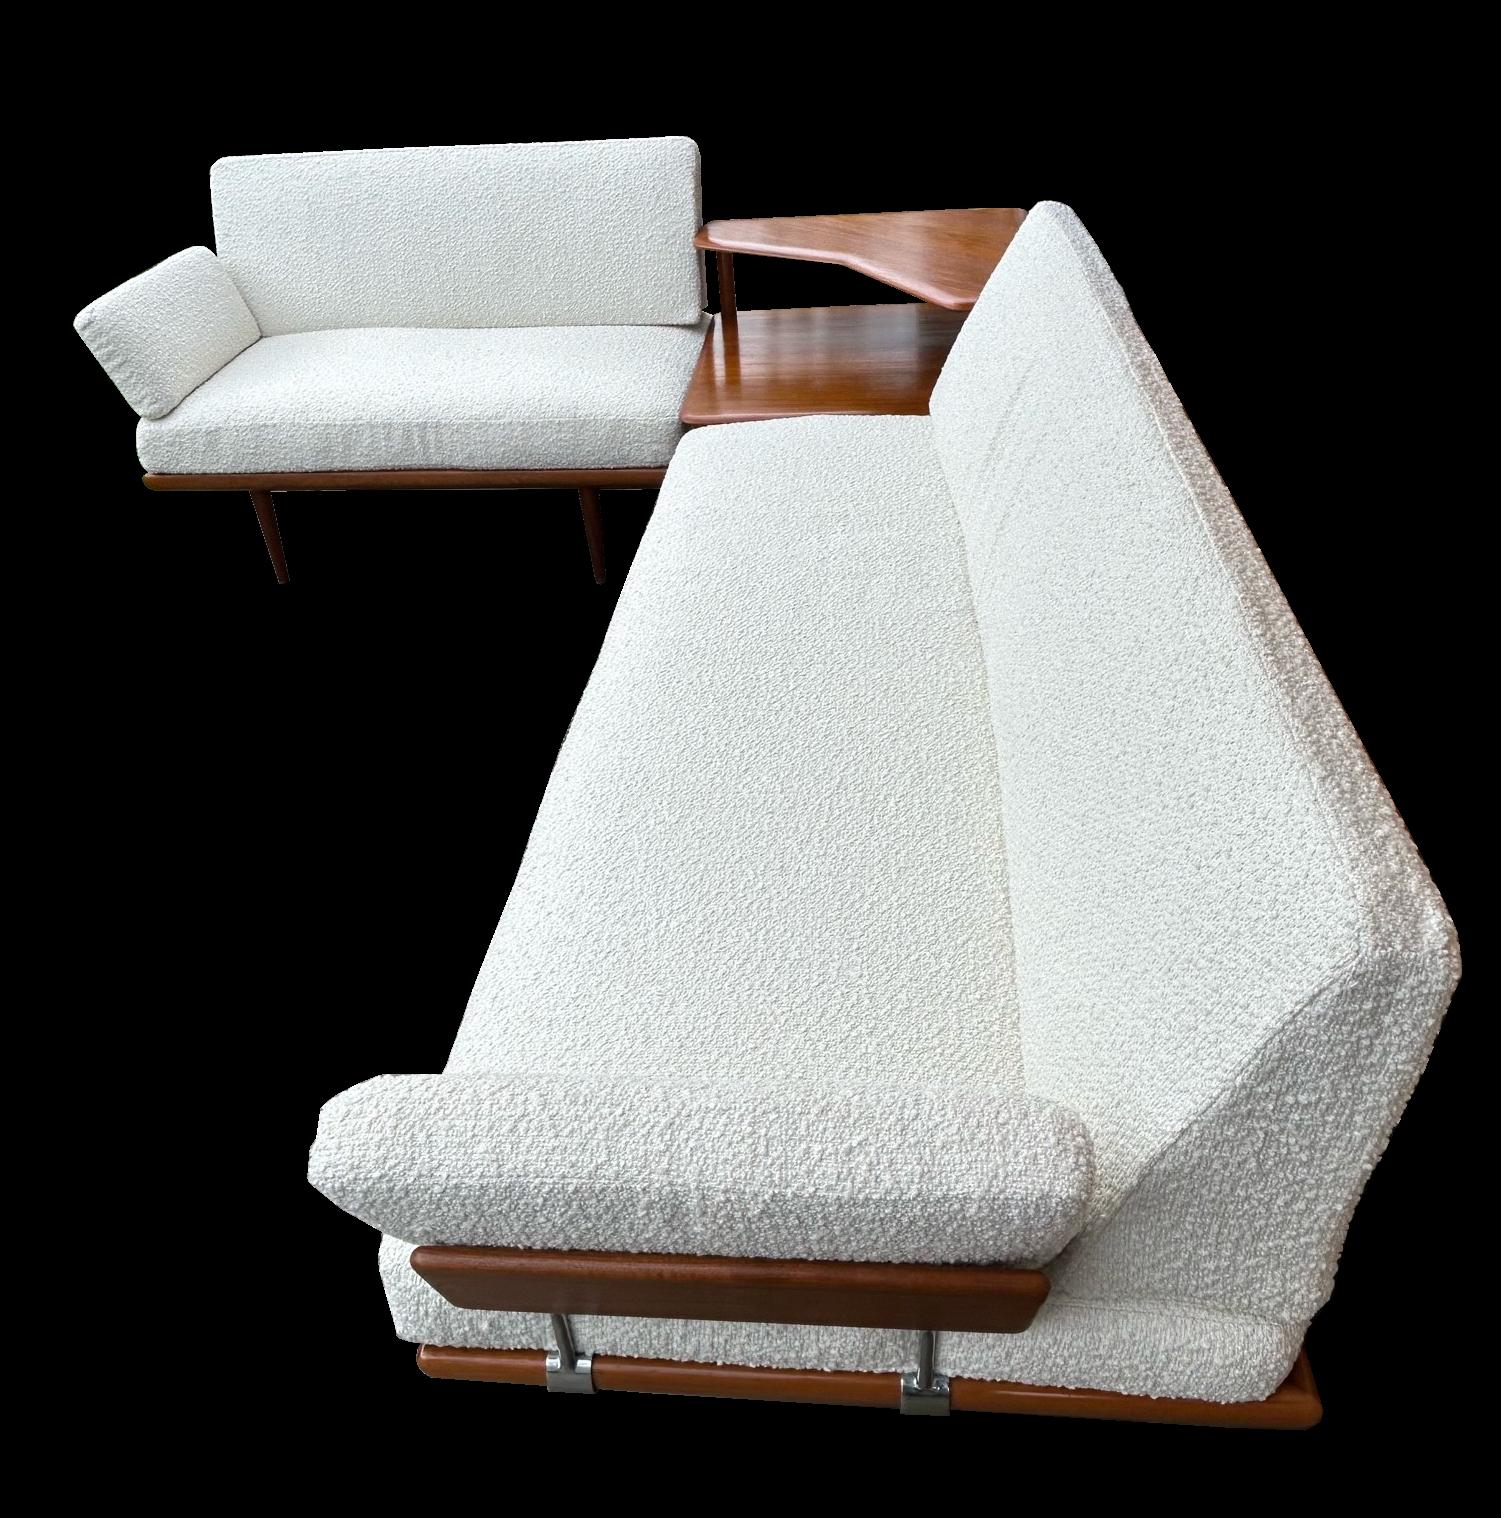 Il s'agit d'un ensemble d'angle classique et original composé d'un canapé à trois places, d'un canapé à deux places et d'une table d'angle assortie à deux niveaux. Toutes ces pièces sont fabriquées en teck de la plus haute qualité et sont dotées de